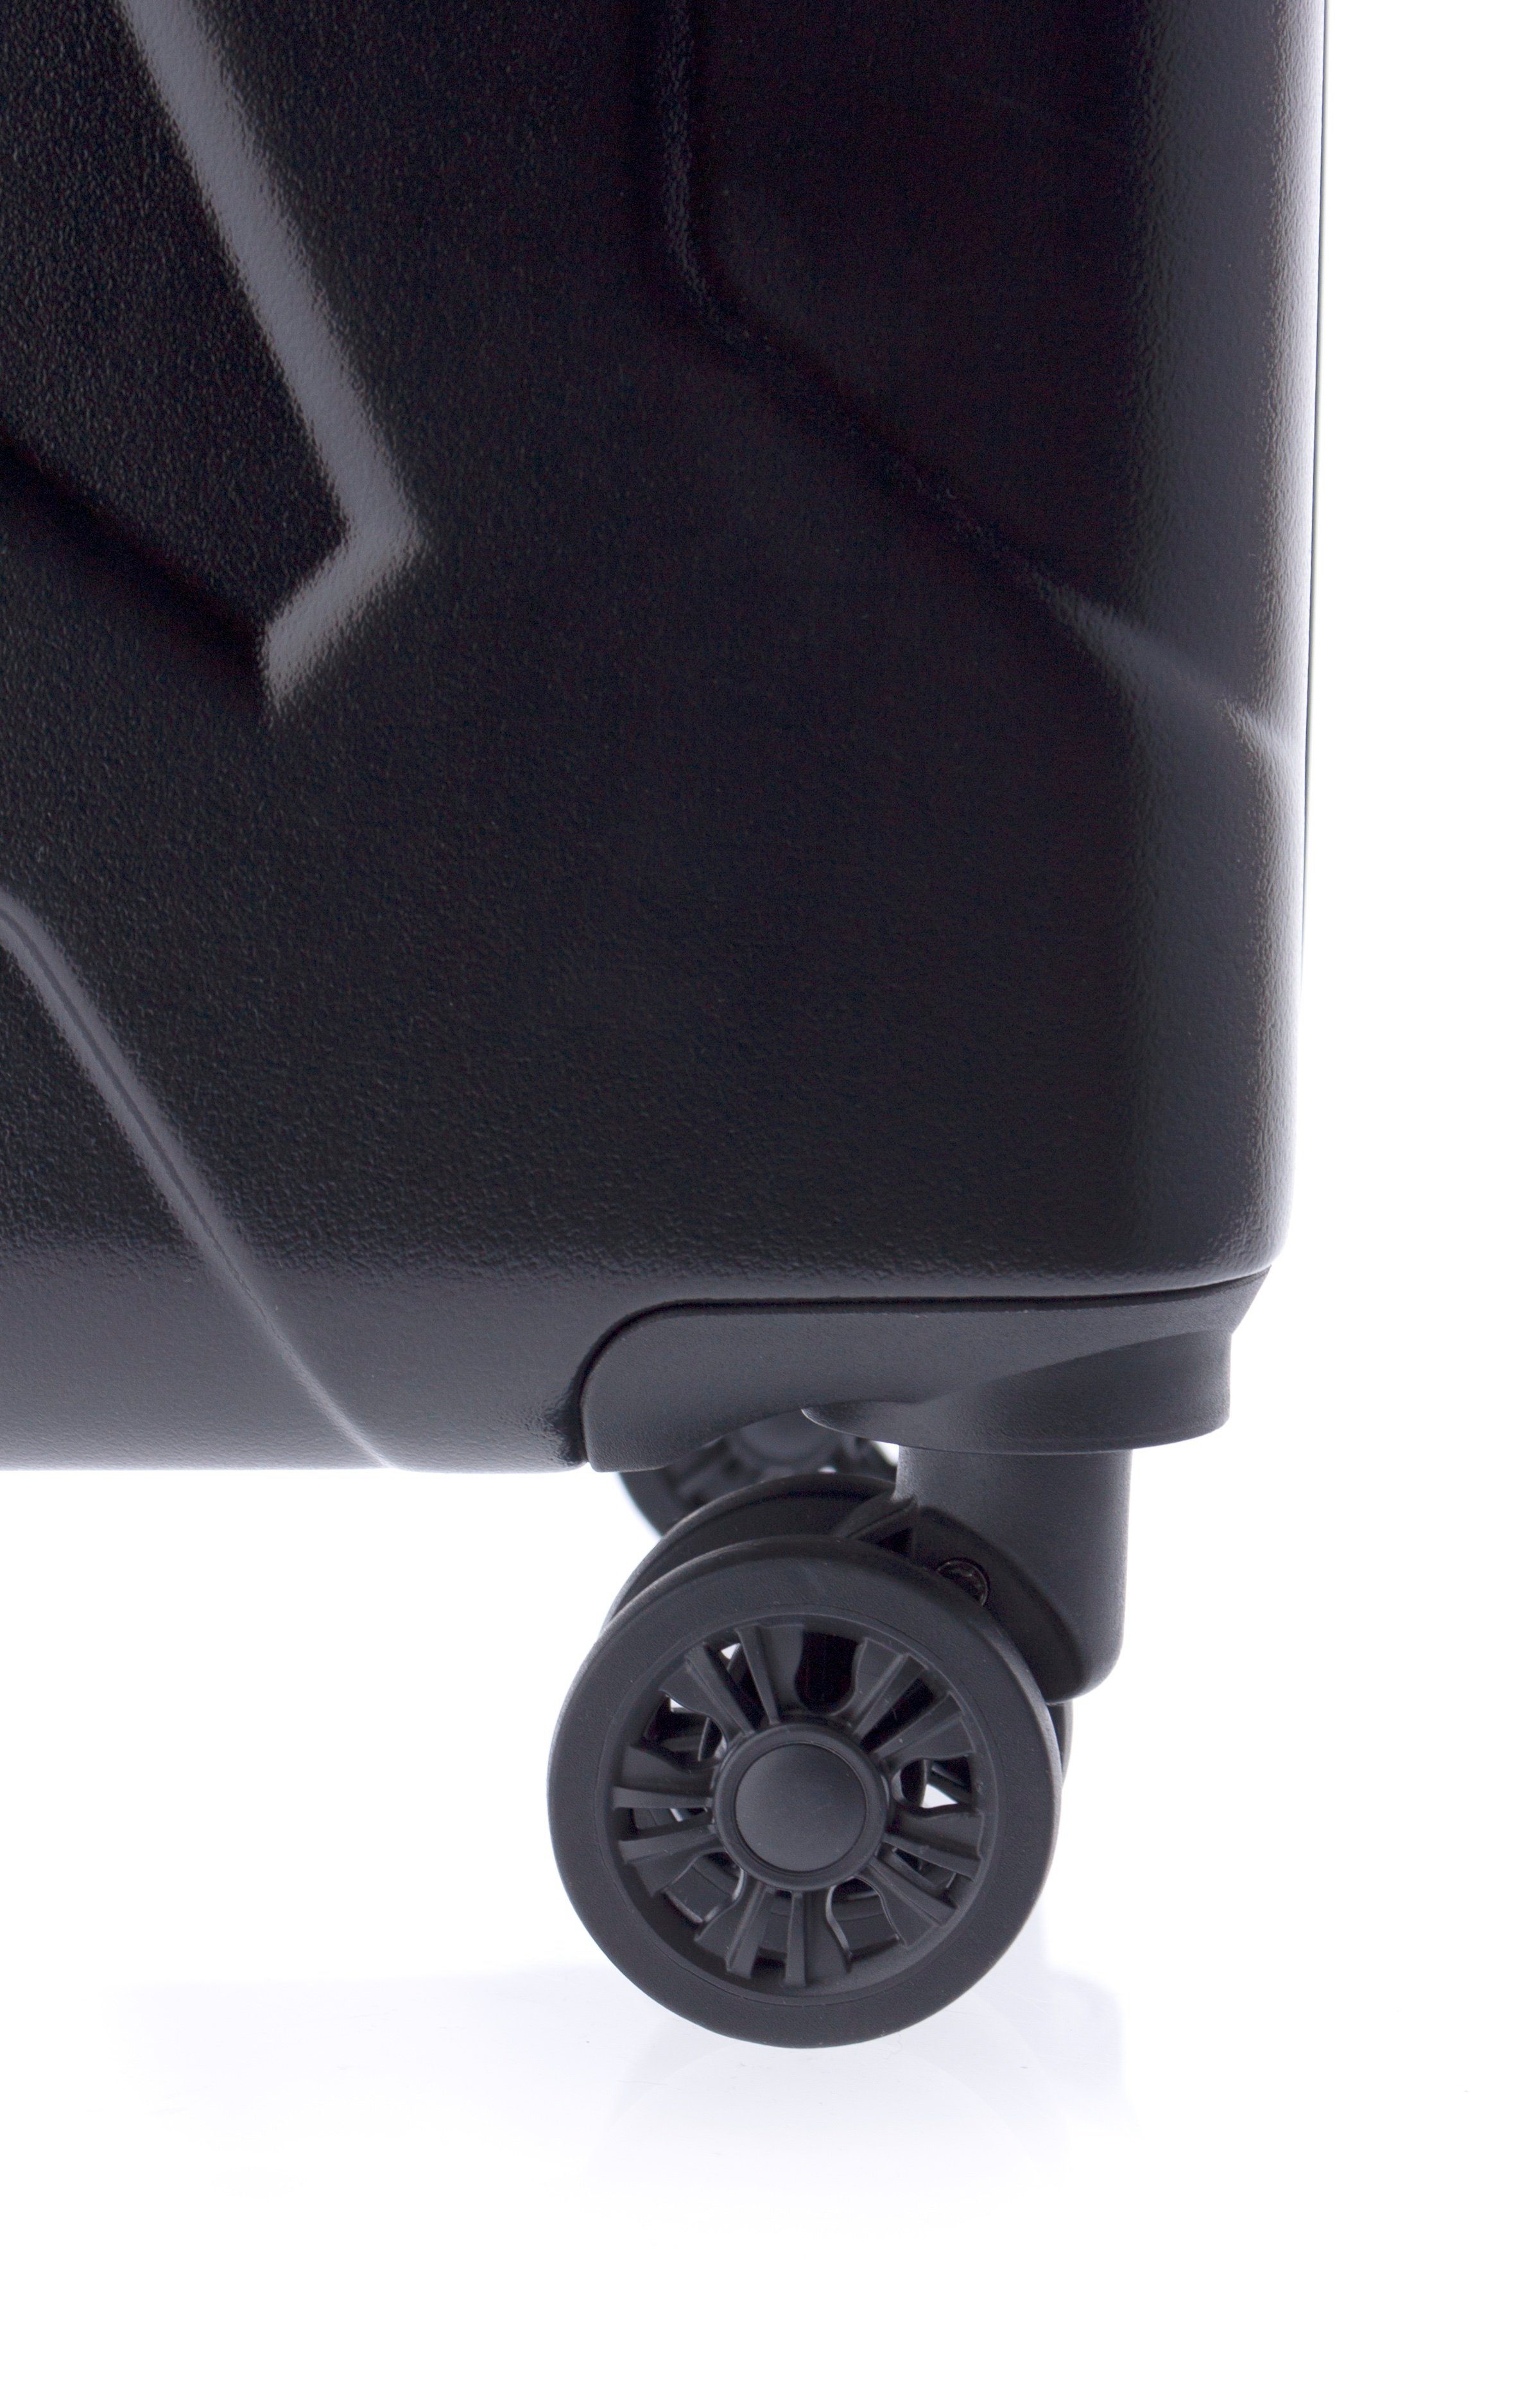 Koffer Hartschalen-Trolley cm, Farben 4 3,8kg, schwarz XL-78 GLADIATOR TSA, 4 Rollen